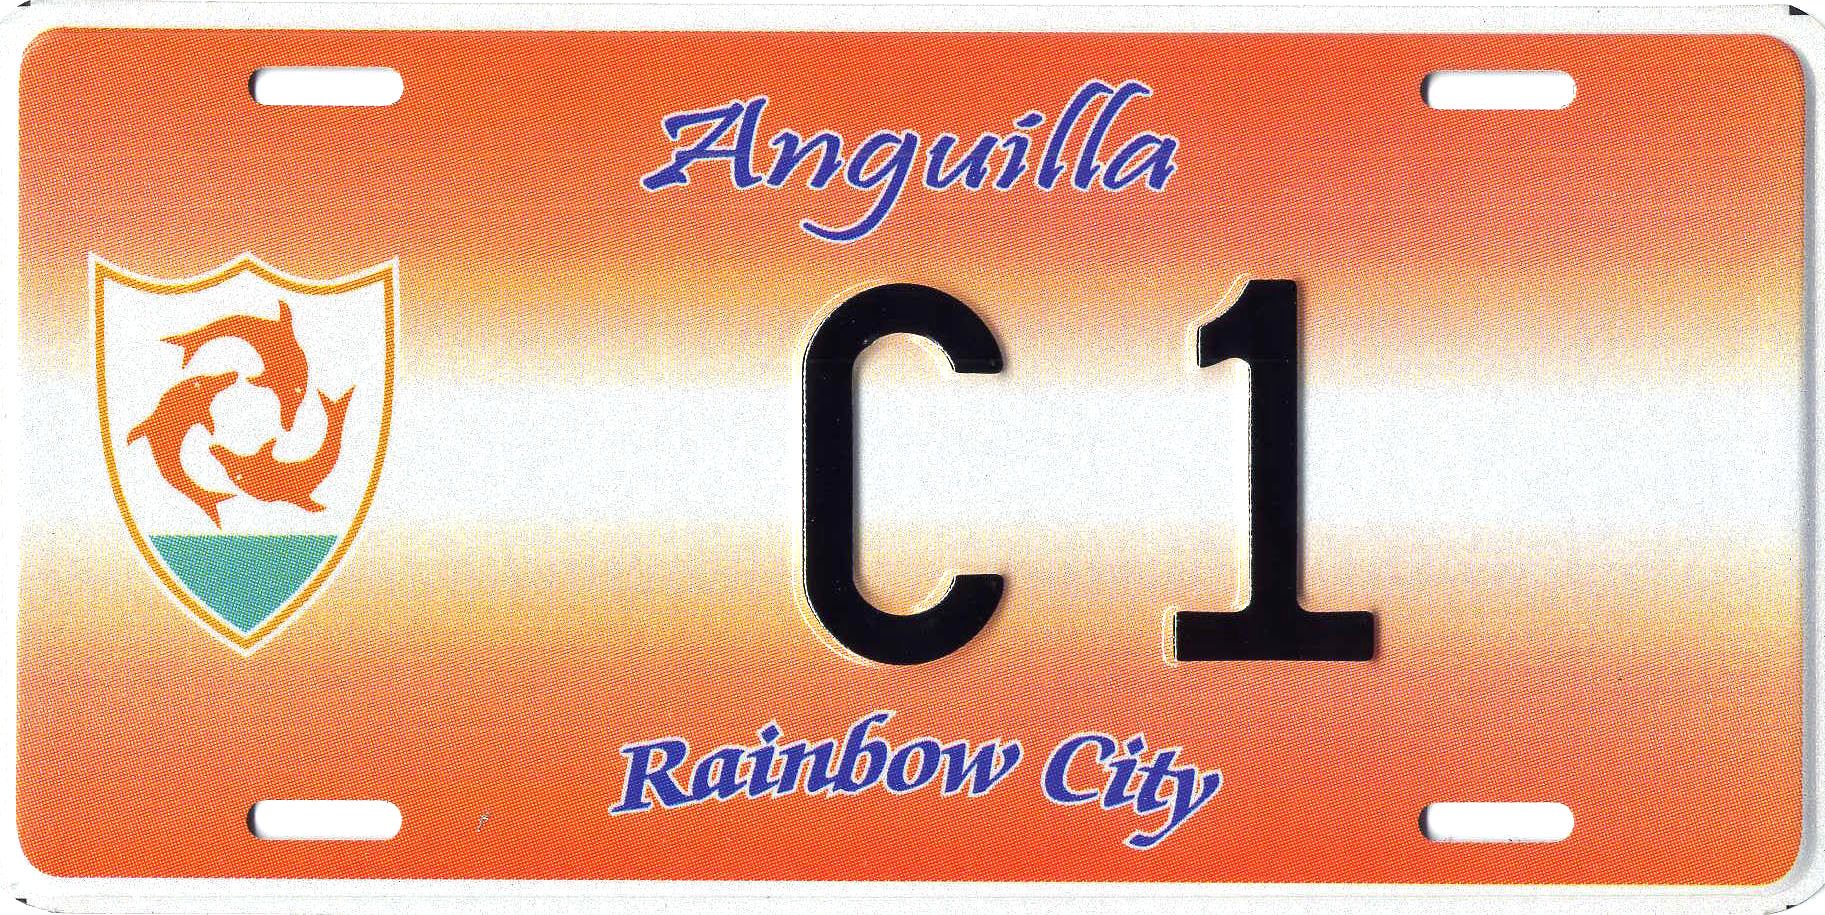 Anguilla_2007-com-sample-DF_EU142.jpg